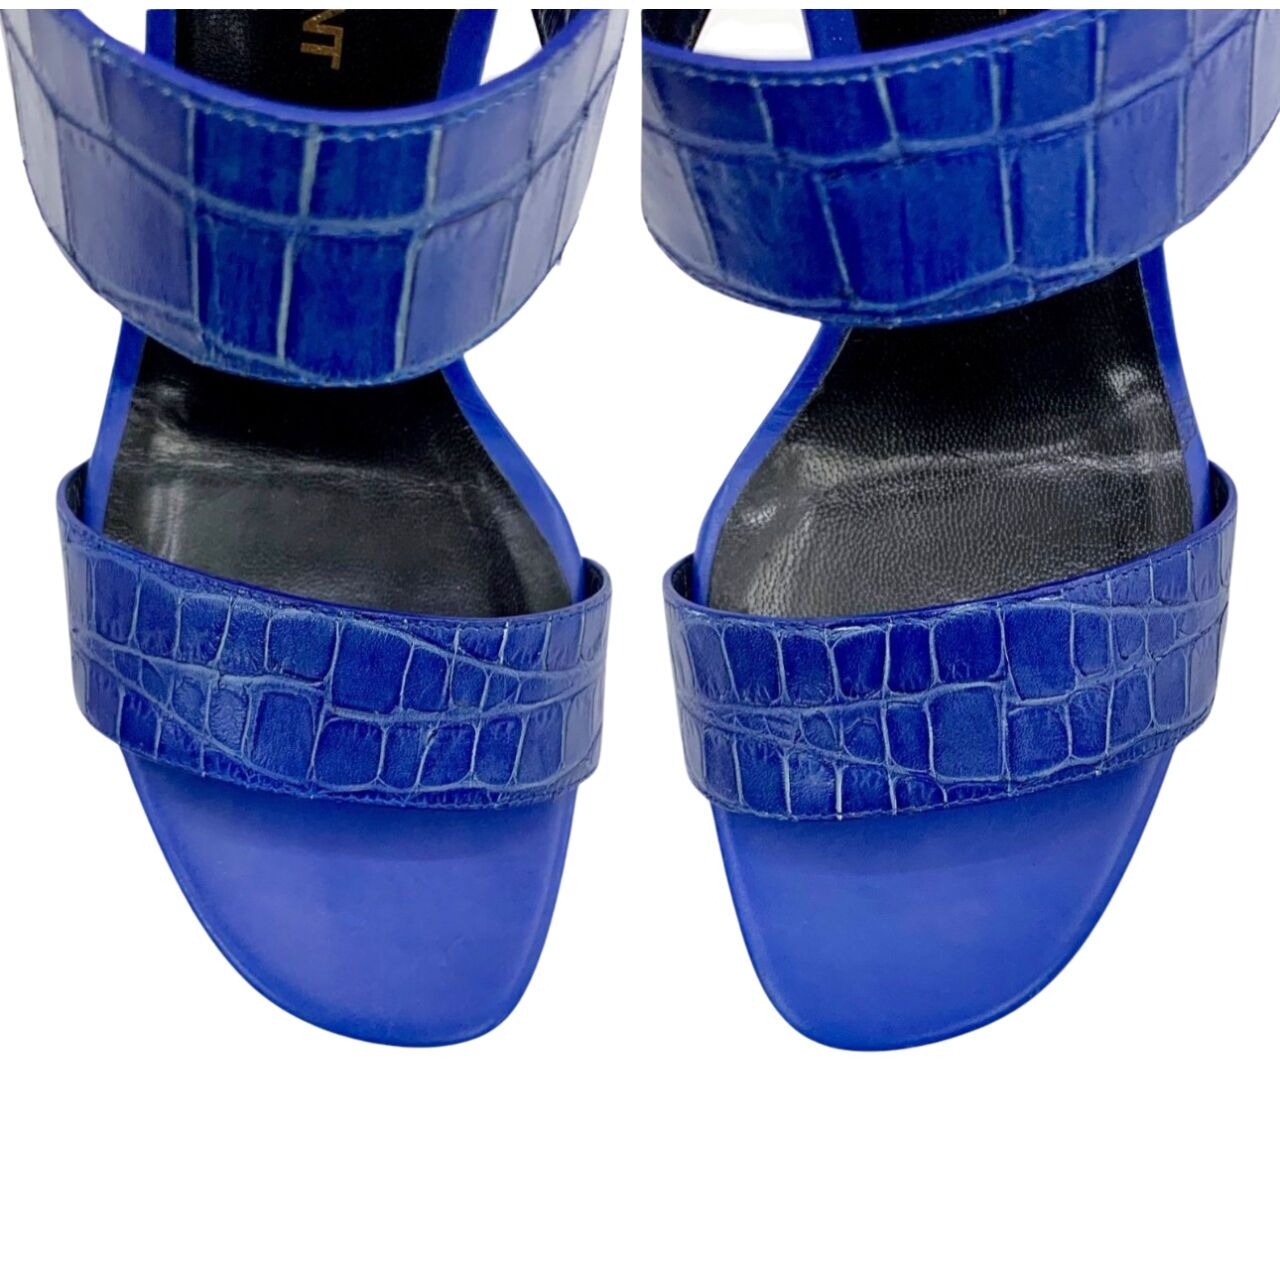 Yves Saint Laurent Blue Crocodile Leather Heels